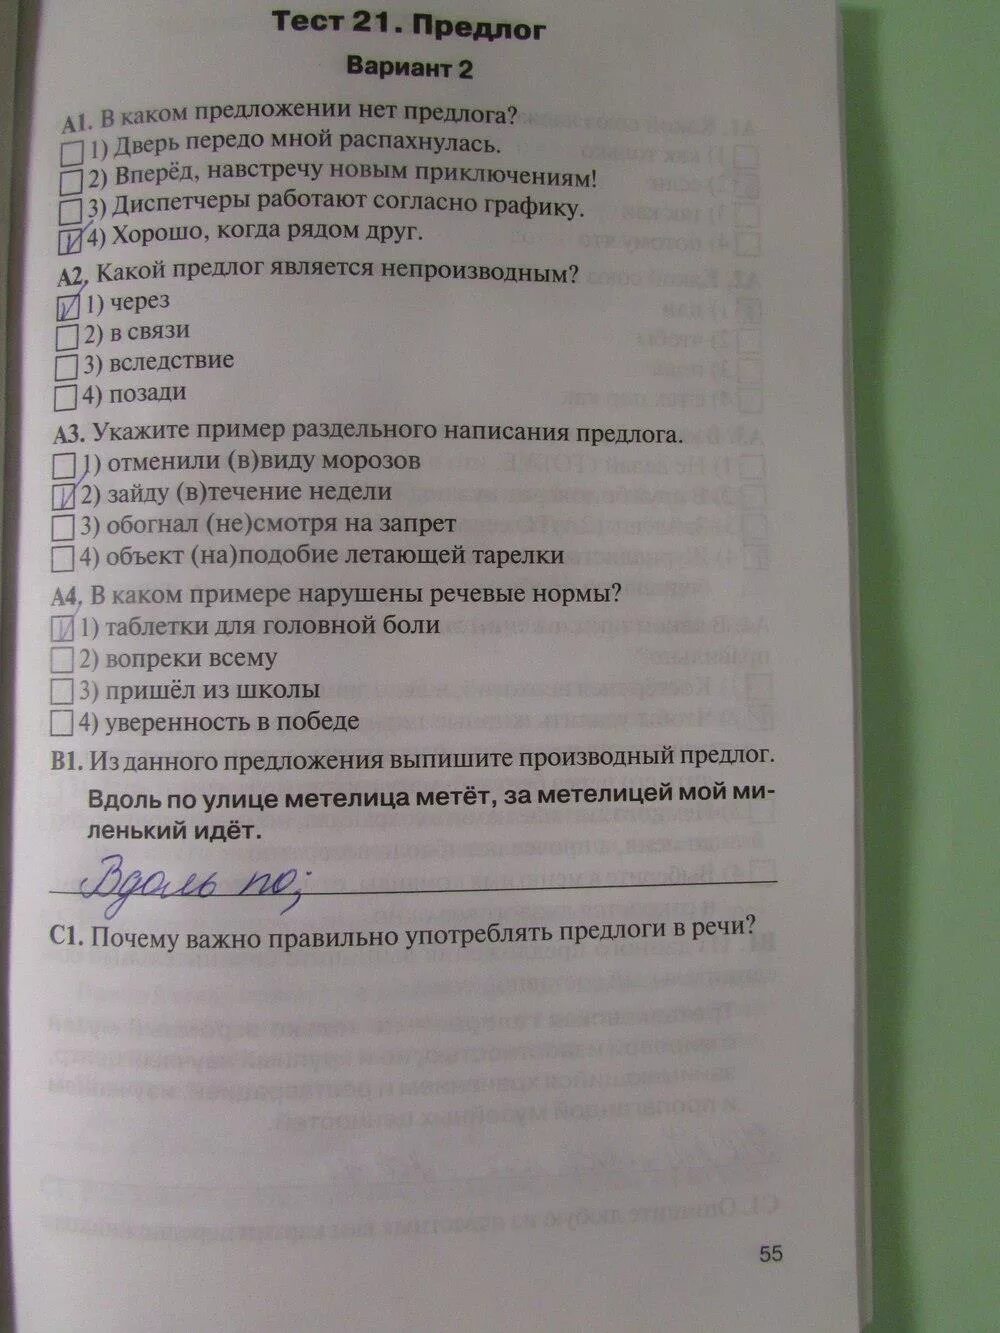 Тест 21 предлог вариант 2 ответы. Тест по русскому 21 тест. Тест 7 класс по русскому 21. Предлог вариант 2. Тест 21 предлог.